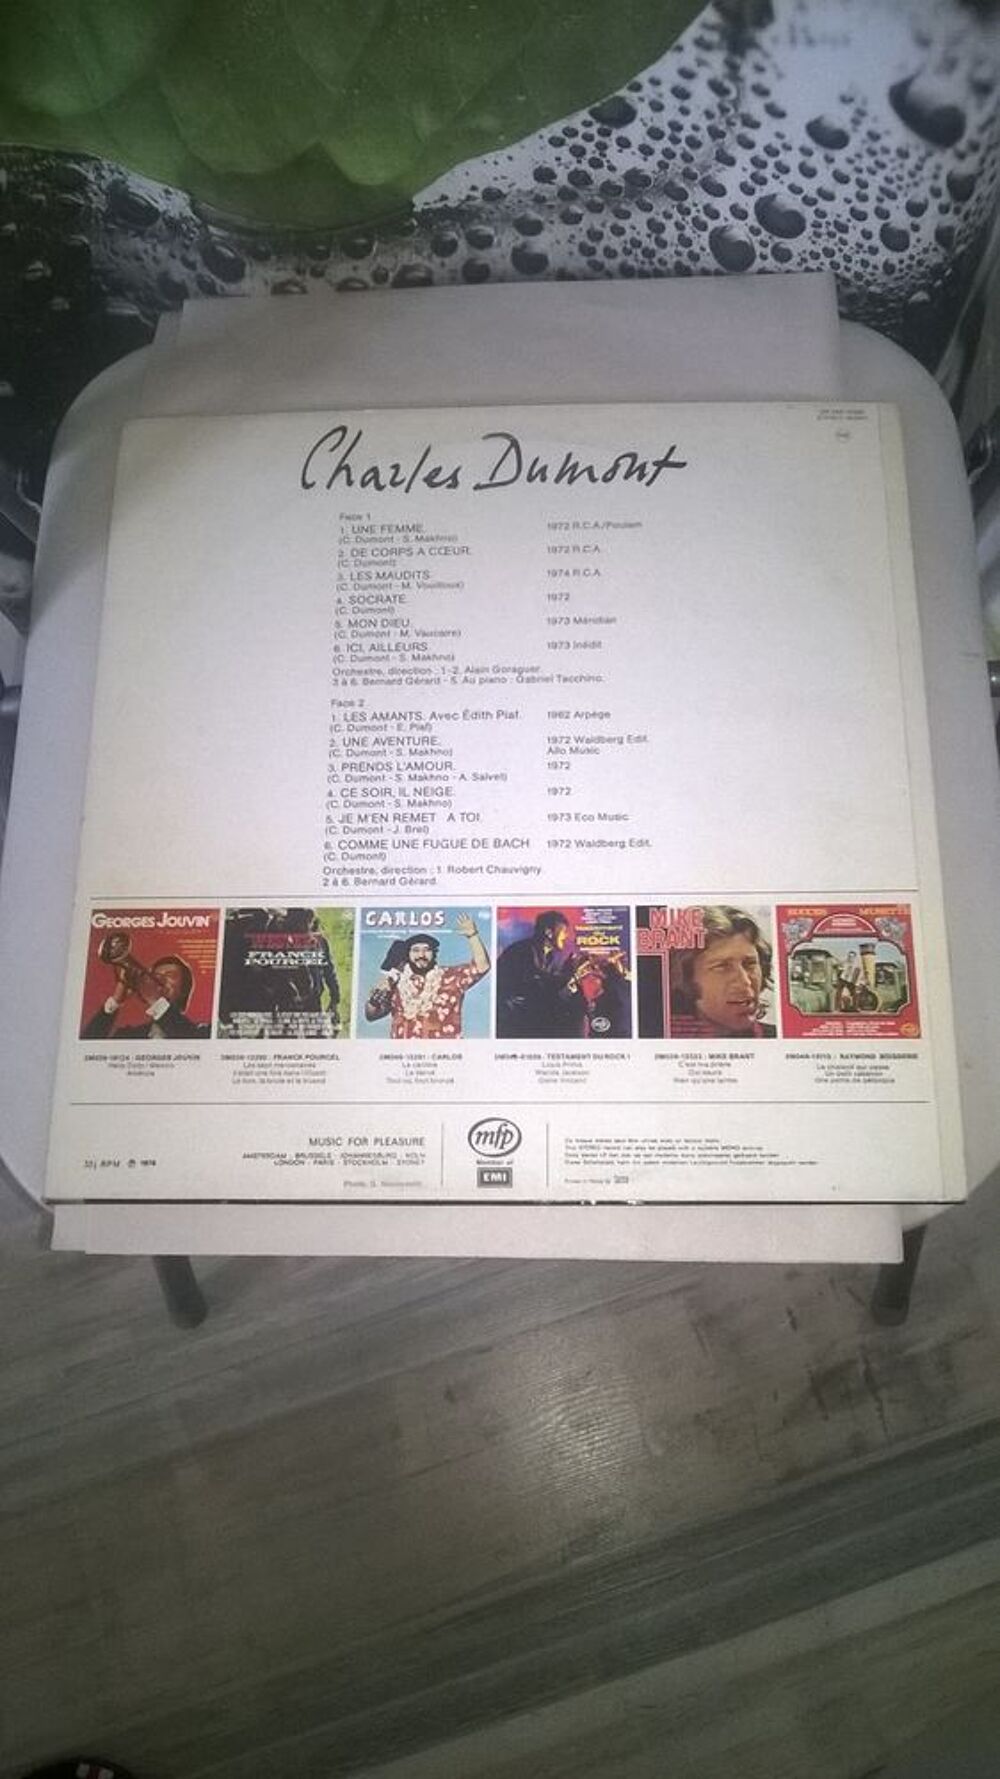 Vinyle Charles DUMONT
Mon dieu
1976
Excellent etat
Une CD et vinyles